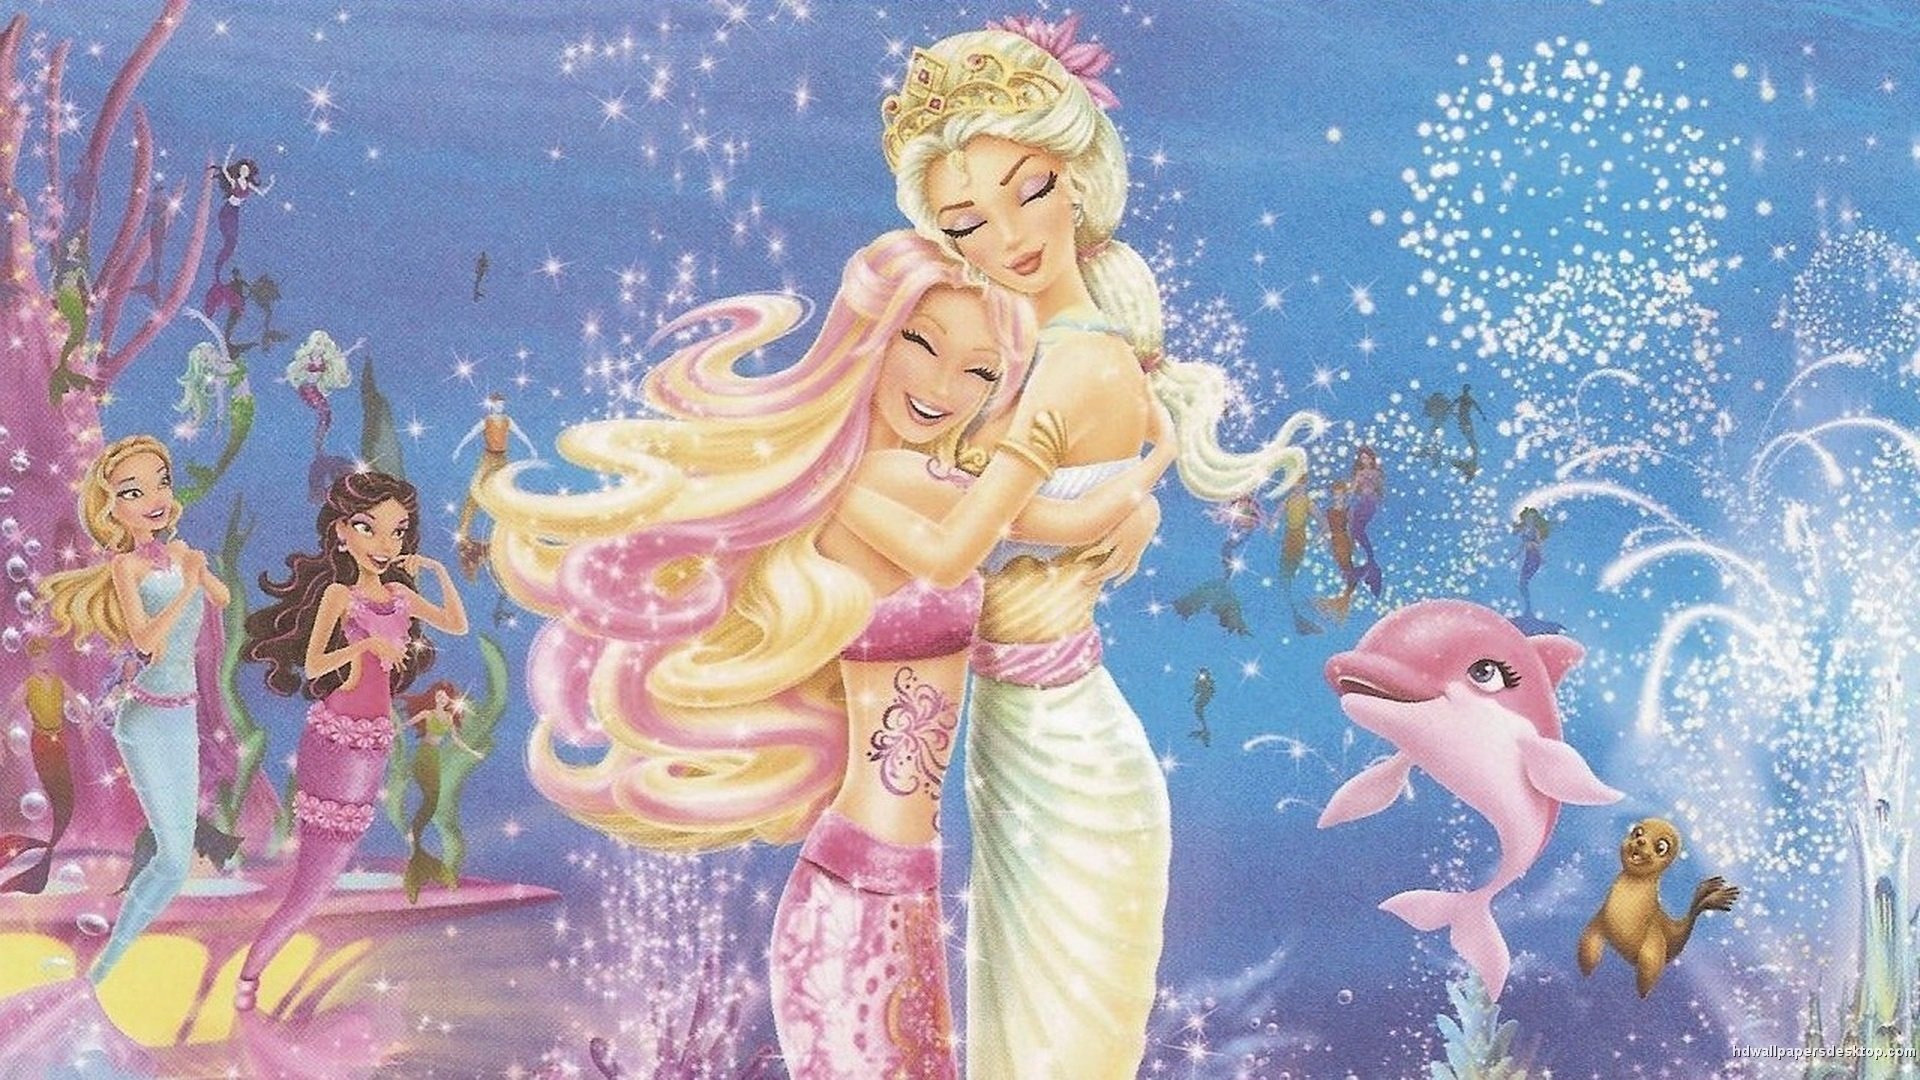 Barbie In A Mermaid Tail In A Mermaid Tale